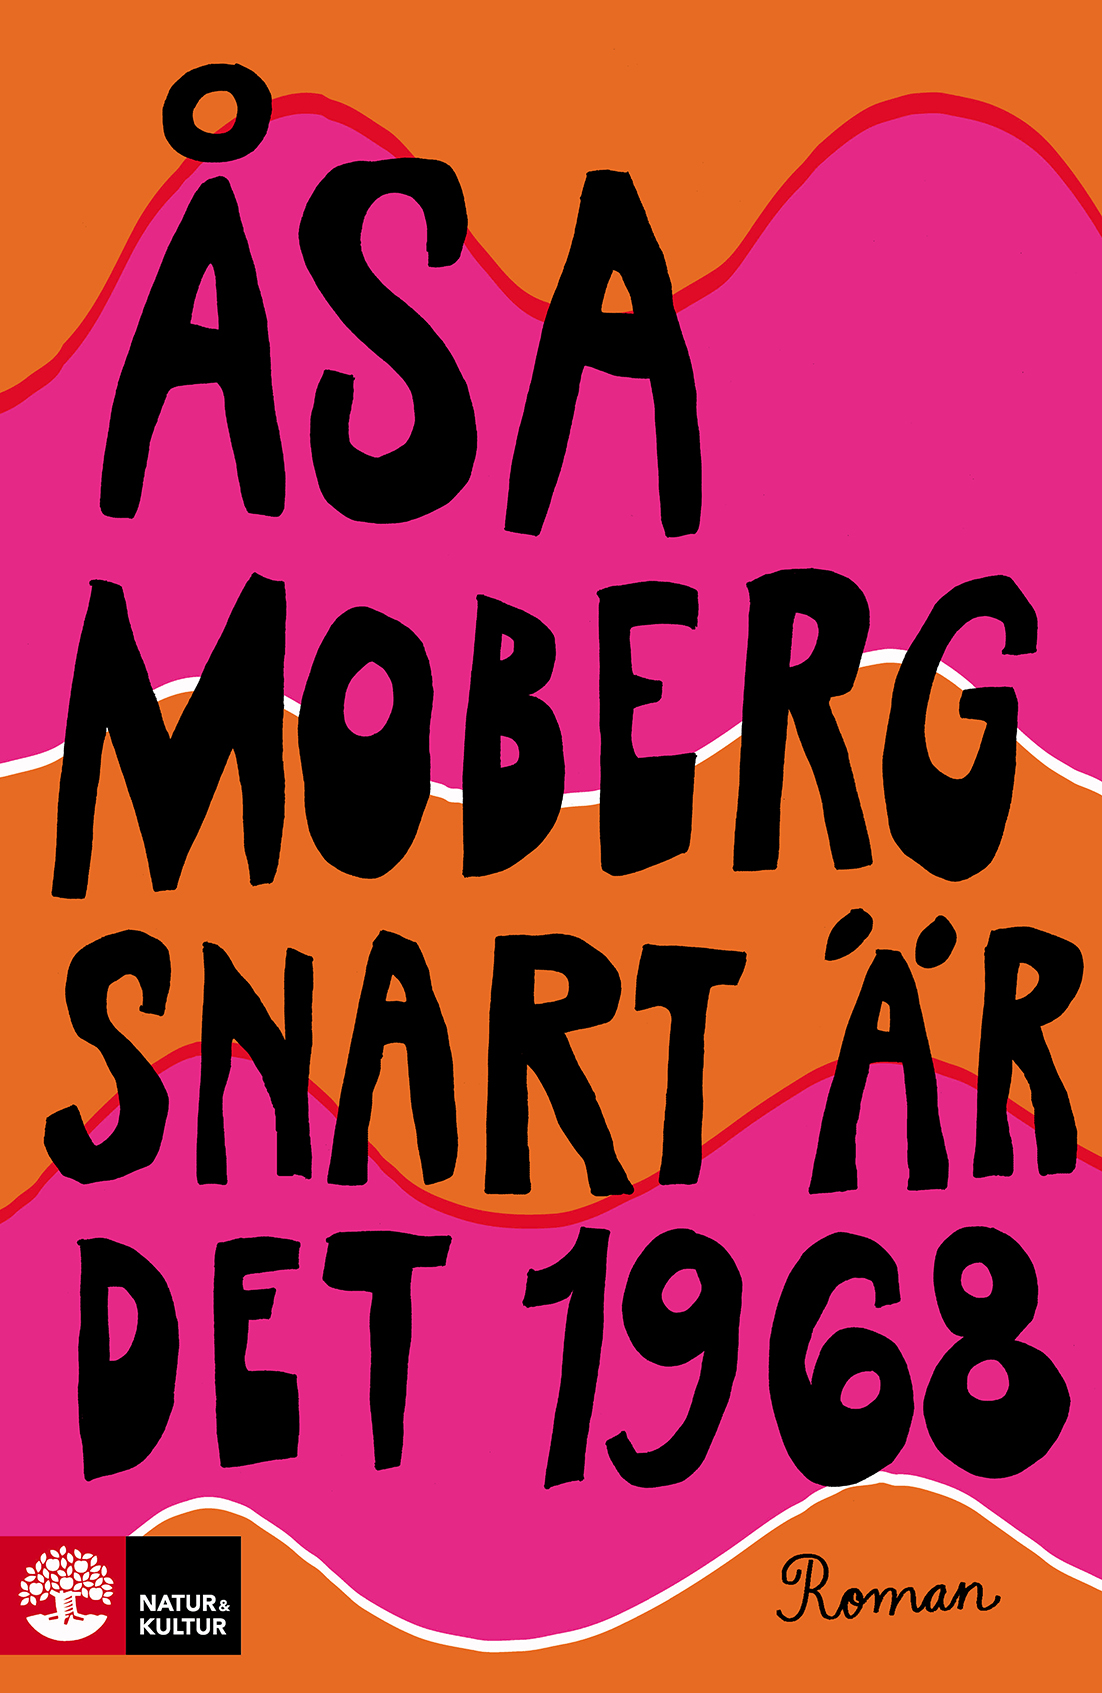 Åsa Moberg snart är det 1968